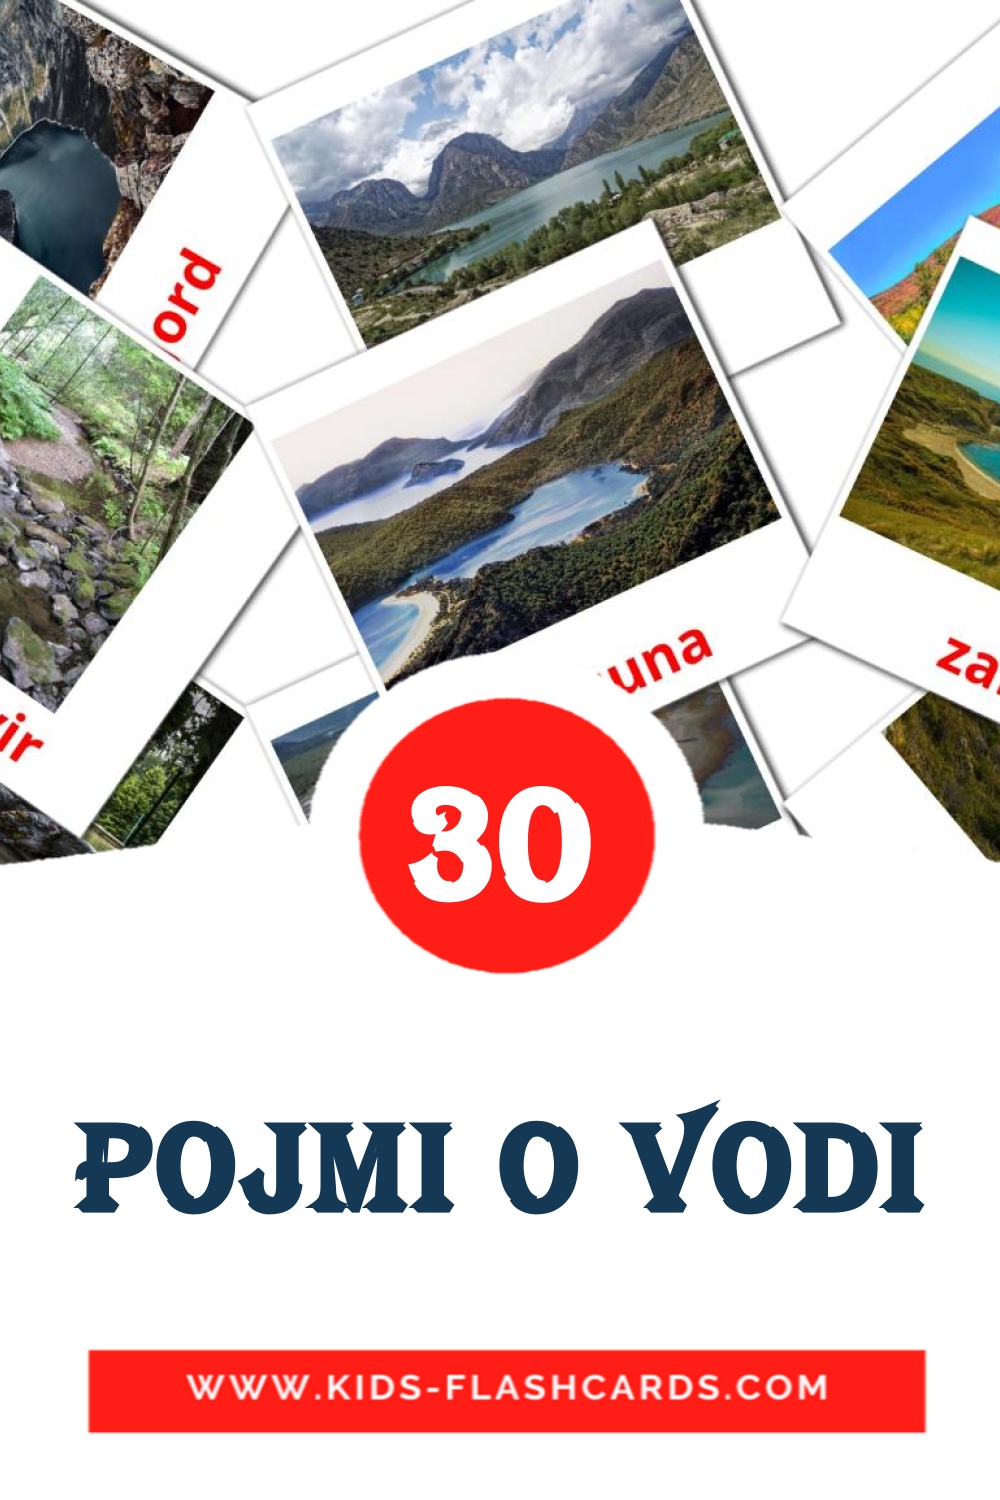 Pojmi o vodi на словенском для Детского Сада (30 карточек)